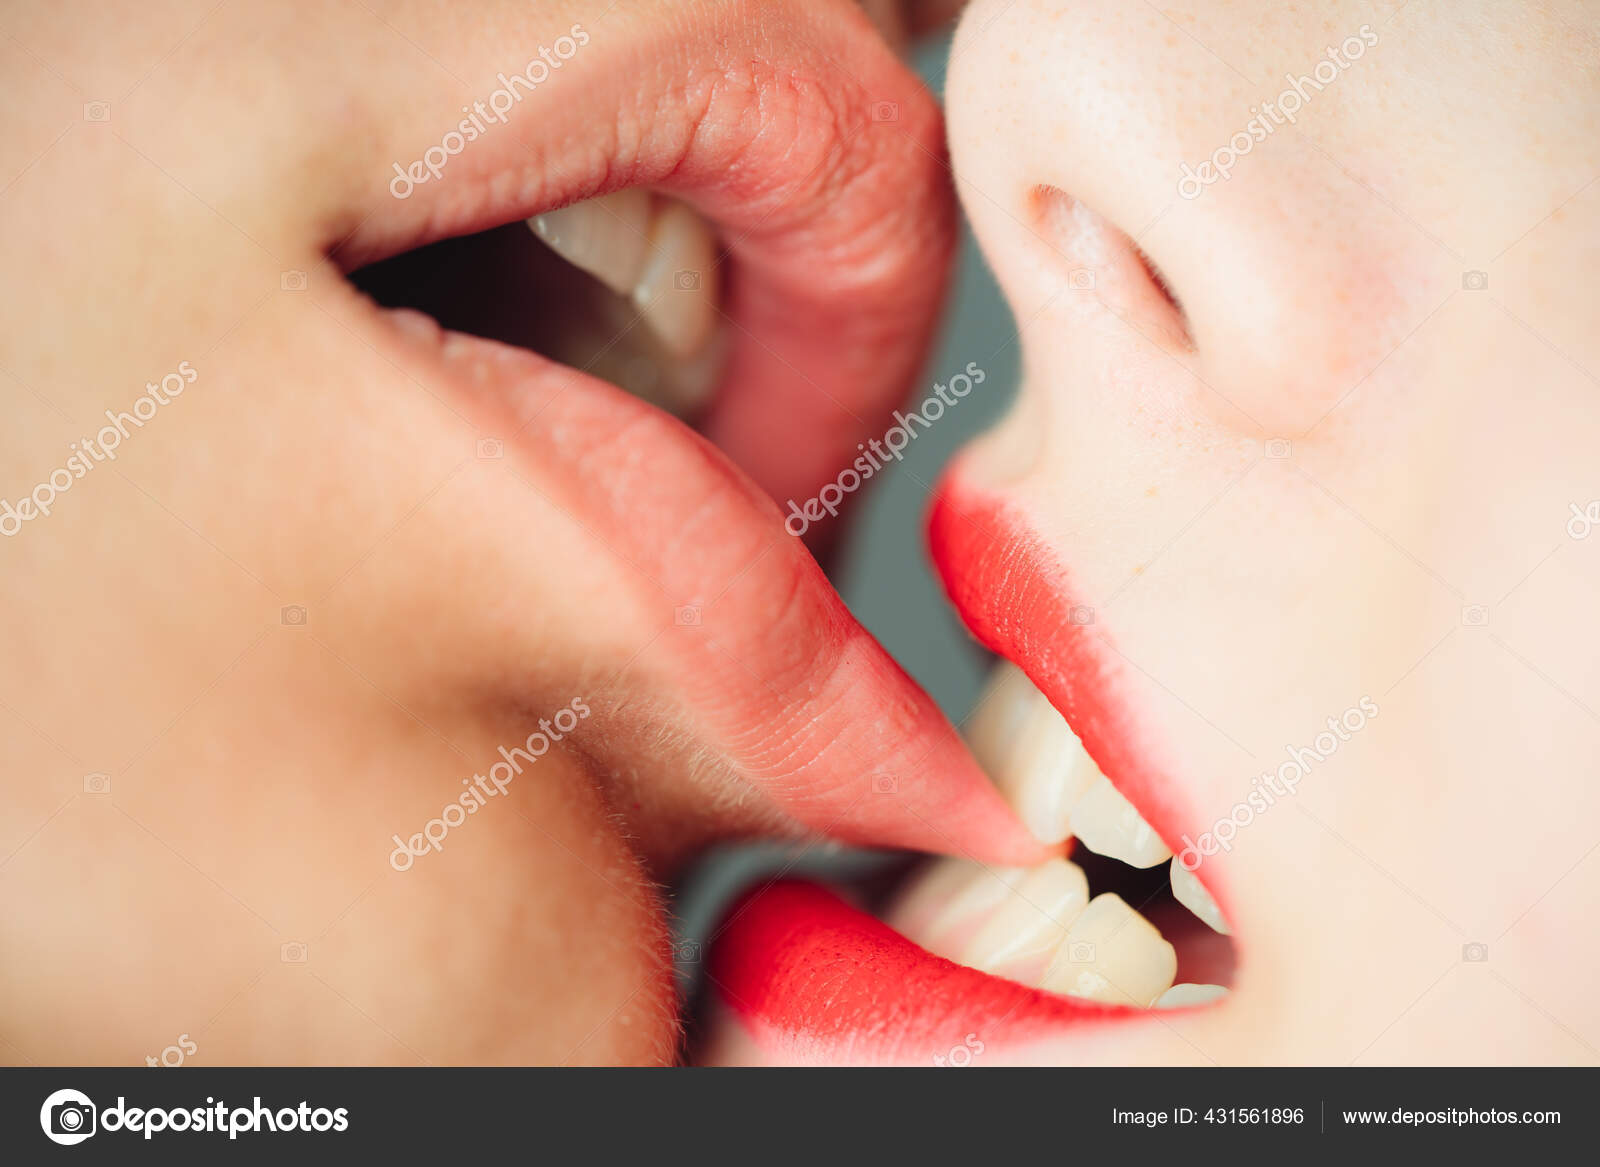 Brazilian Girls Tongue Kissing